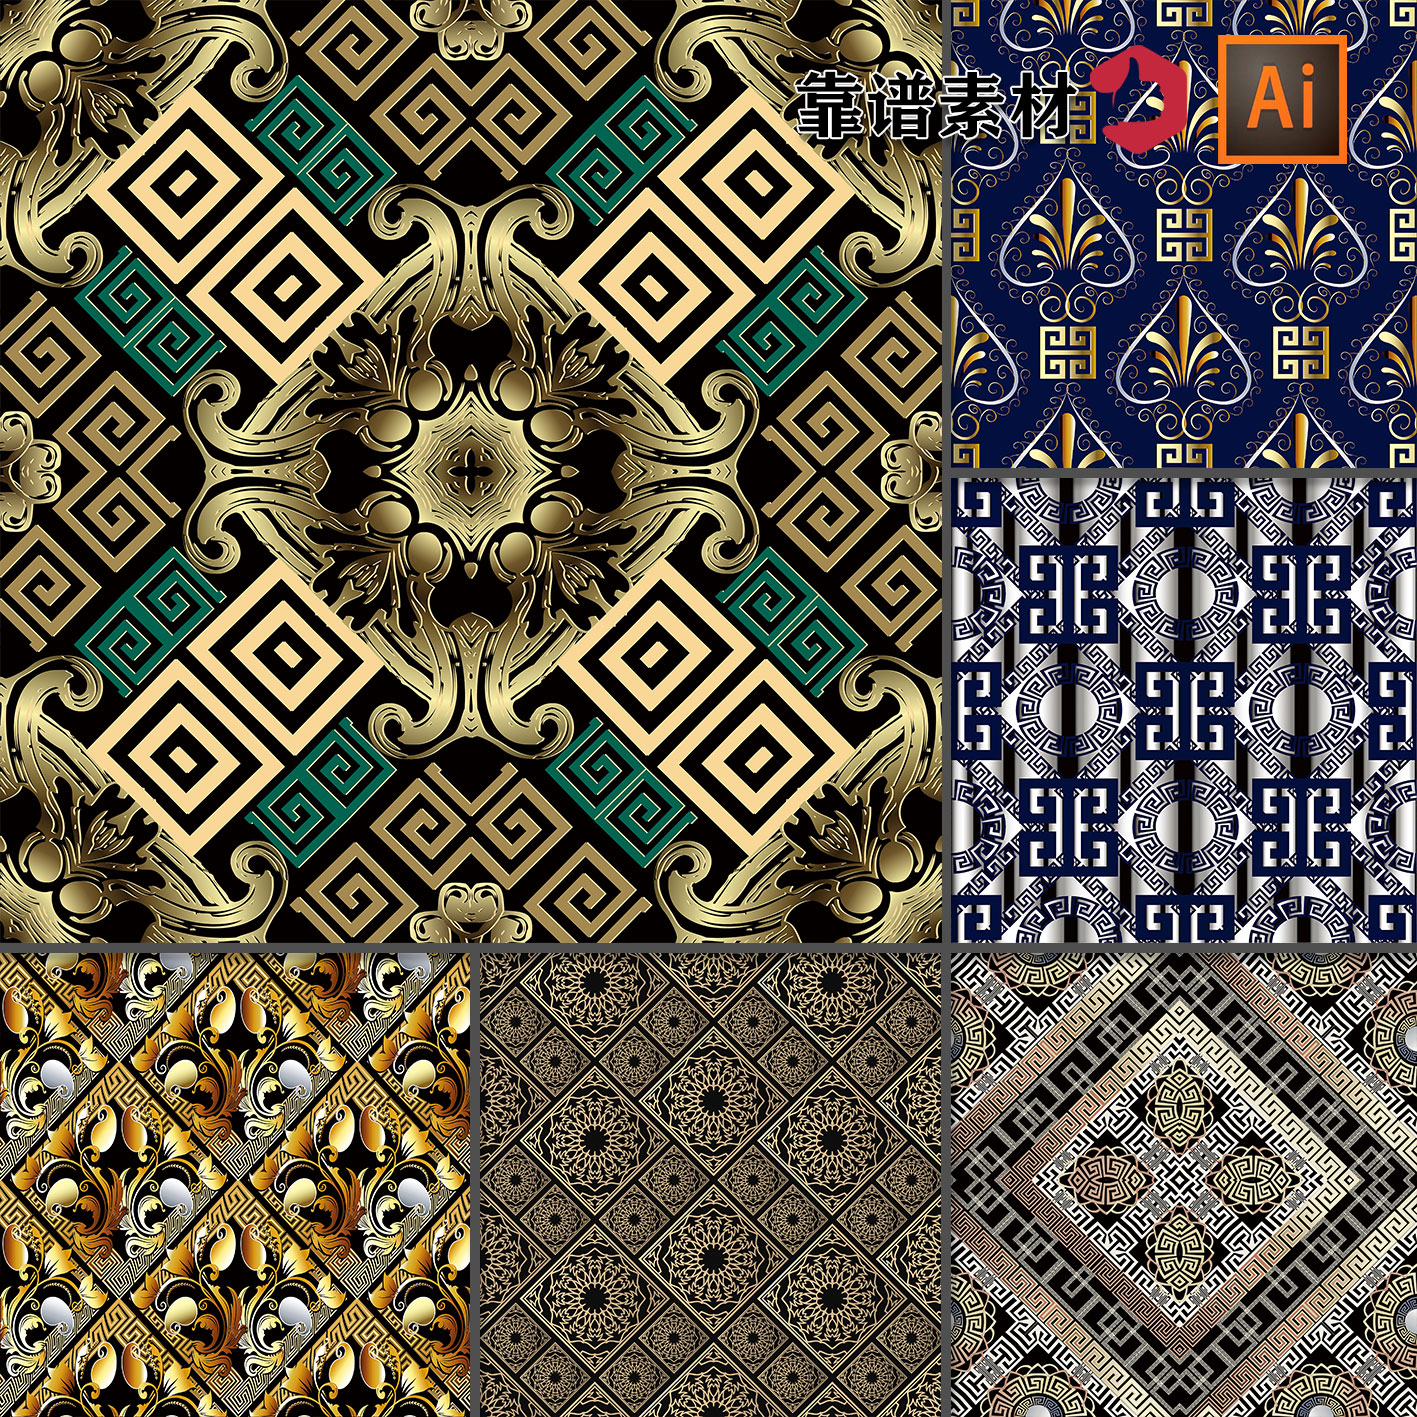 复古传统金色格子花纹地毯面料重复循环拼接印花图案AI设计素材